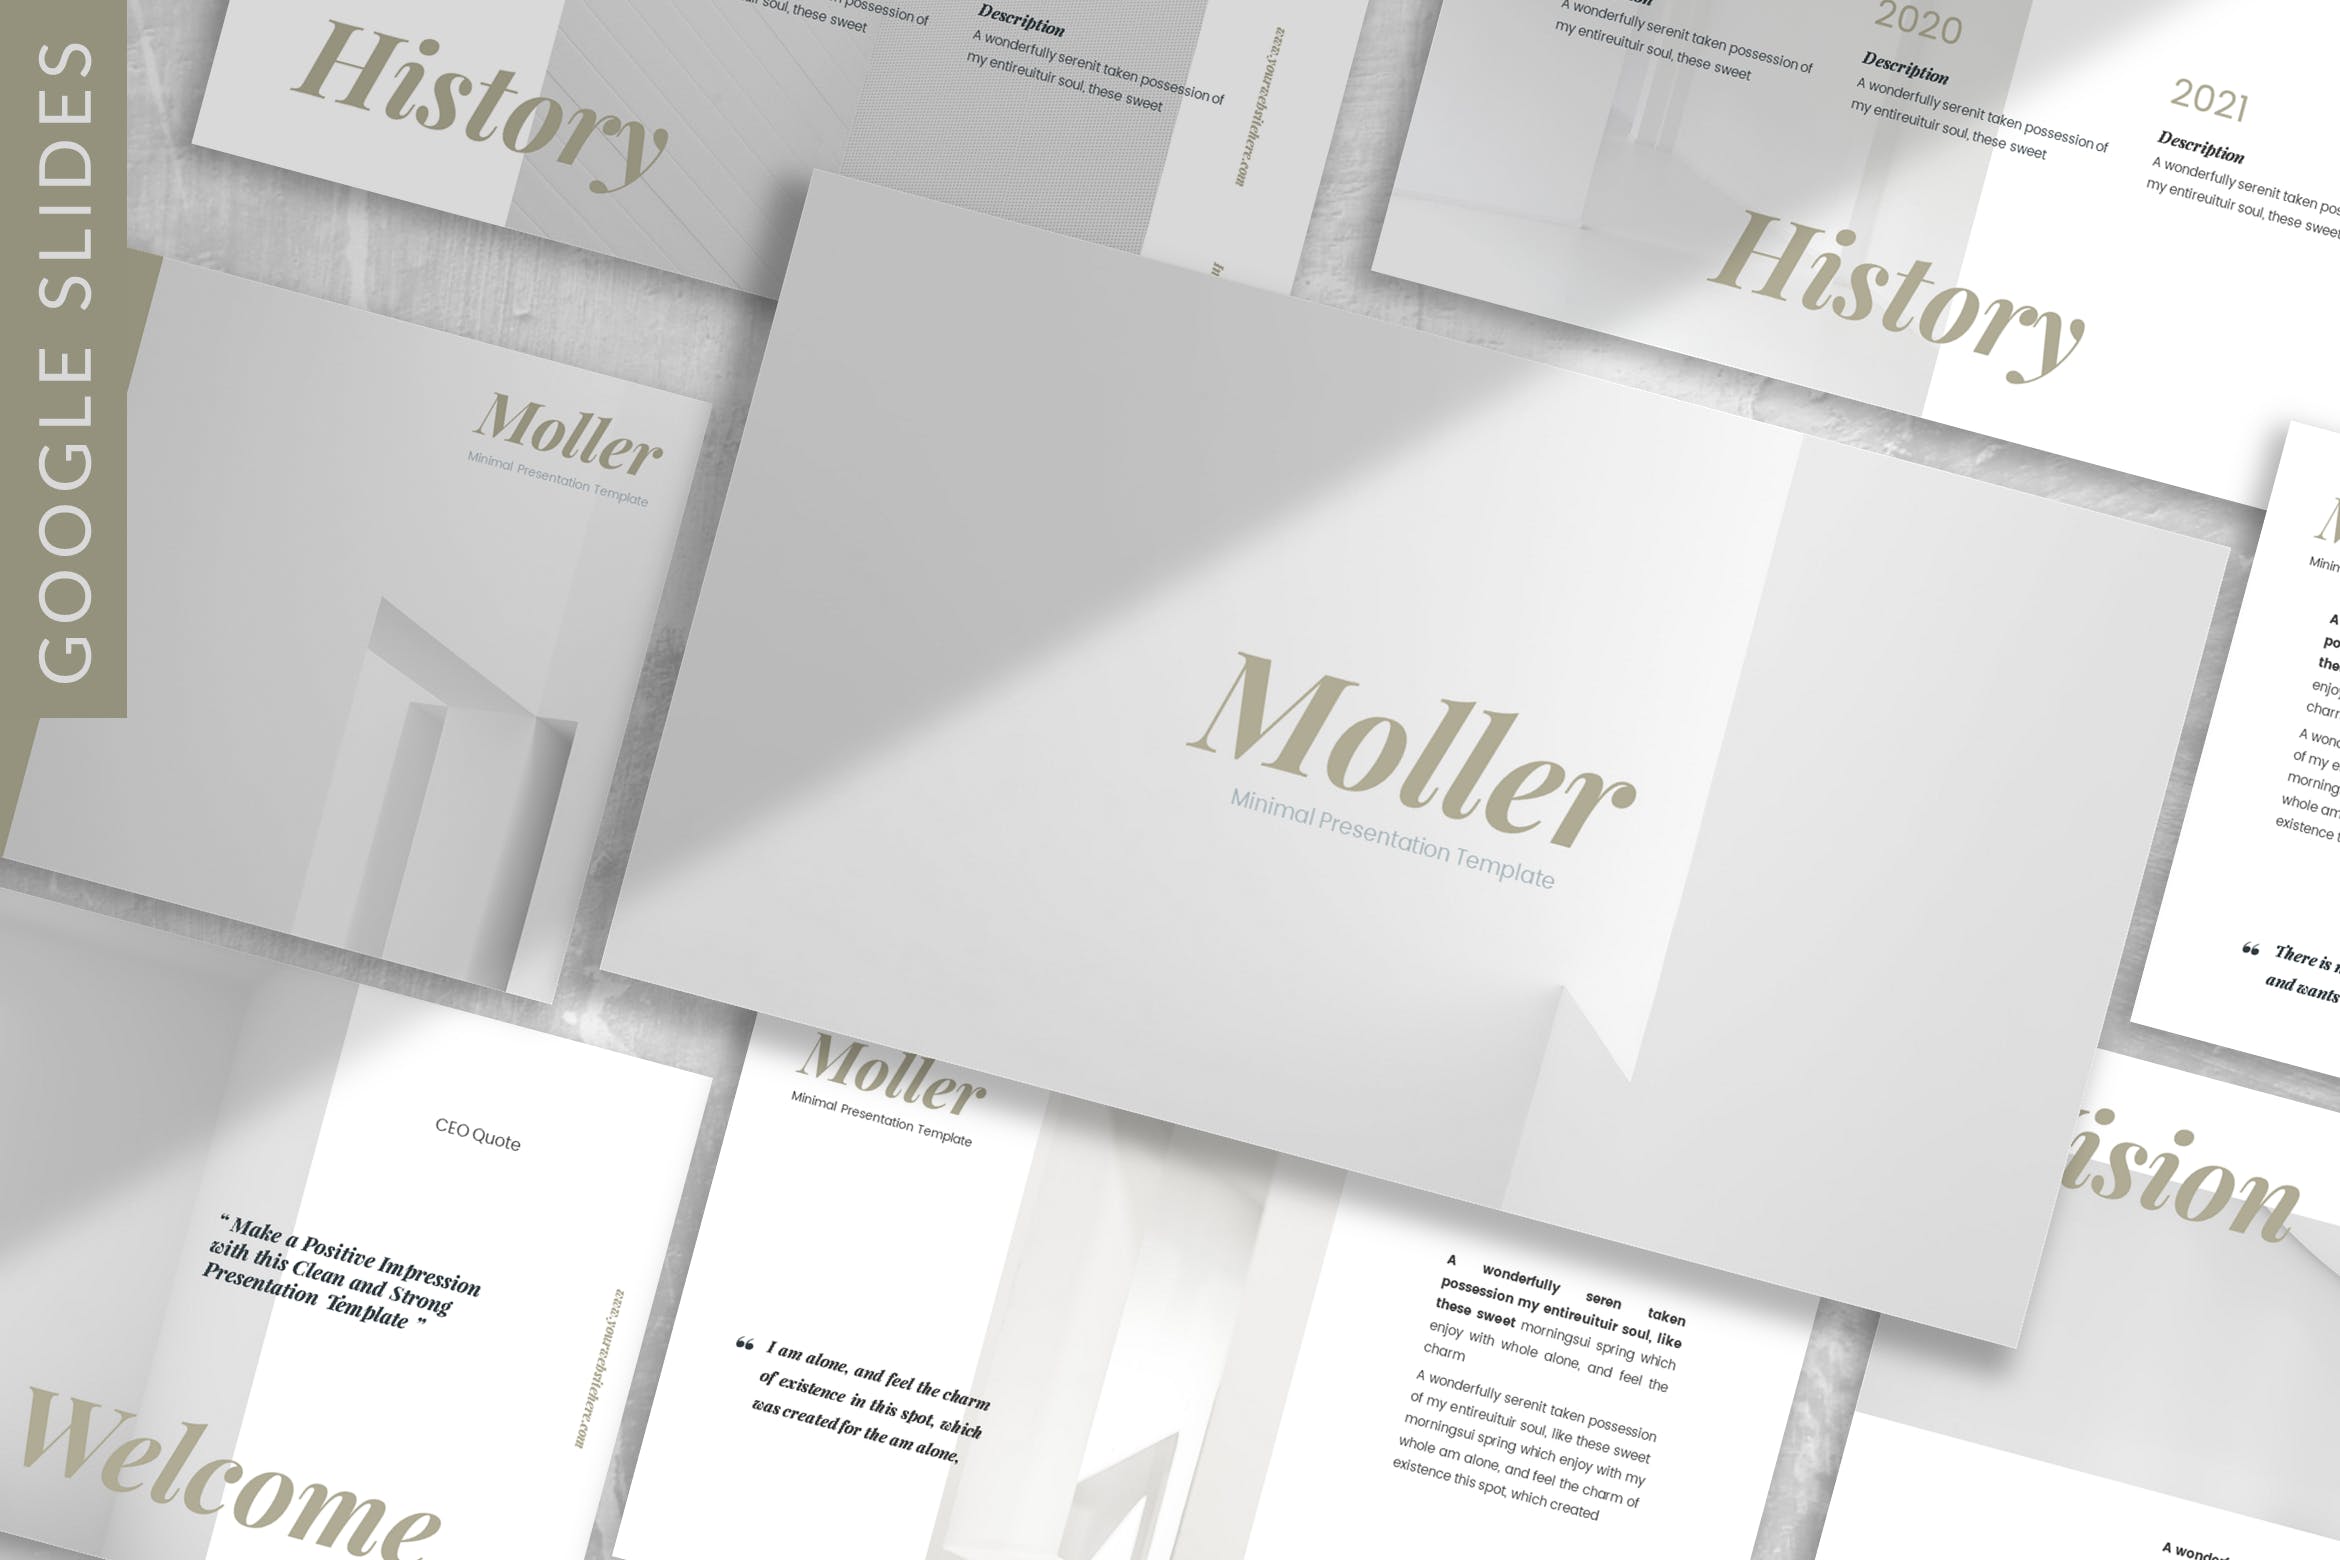 极简Lookbook设计风格素材库精选谷歌演示模板 Moller – Lookbook Google Slide Template插图